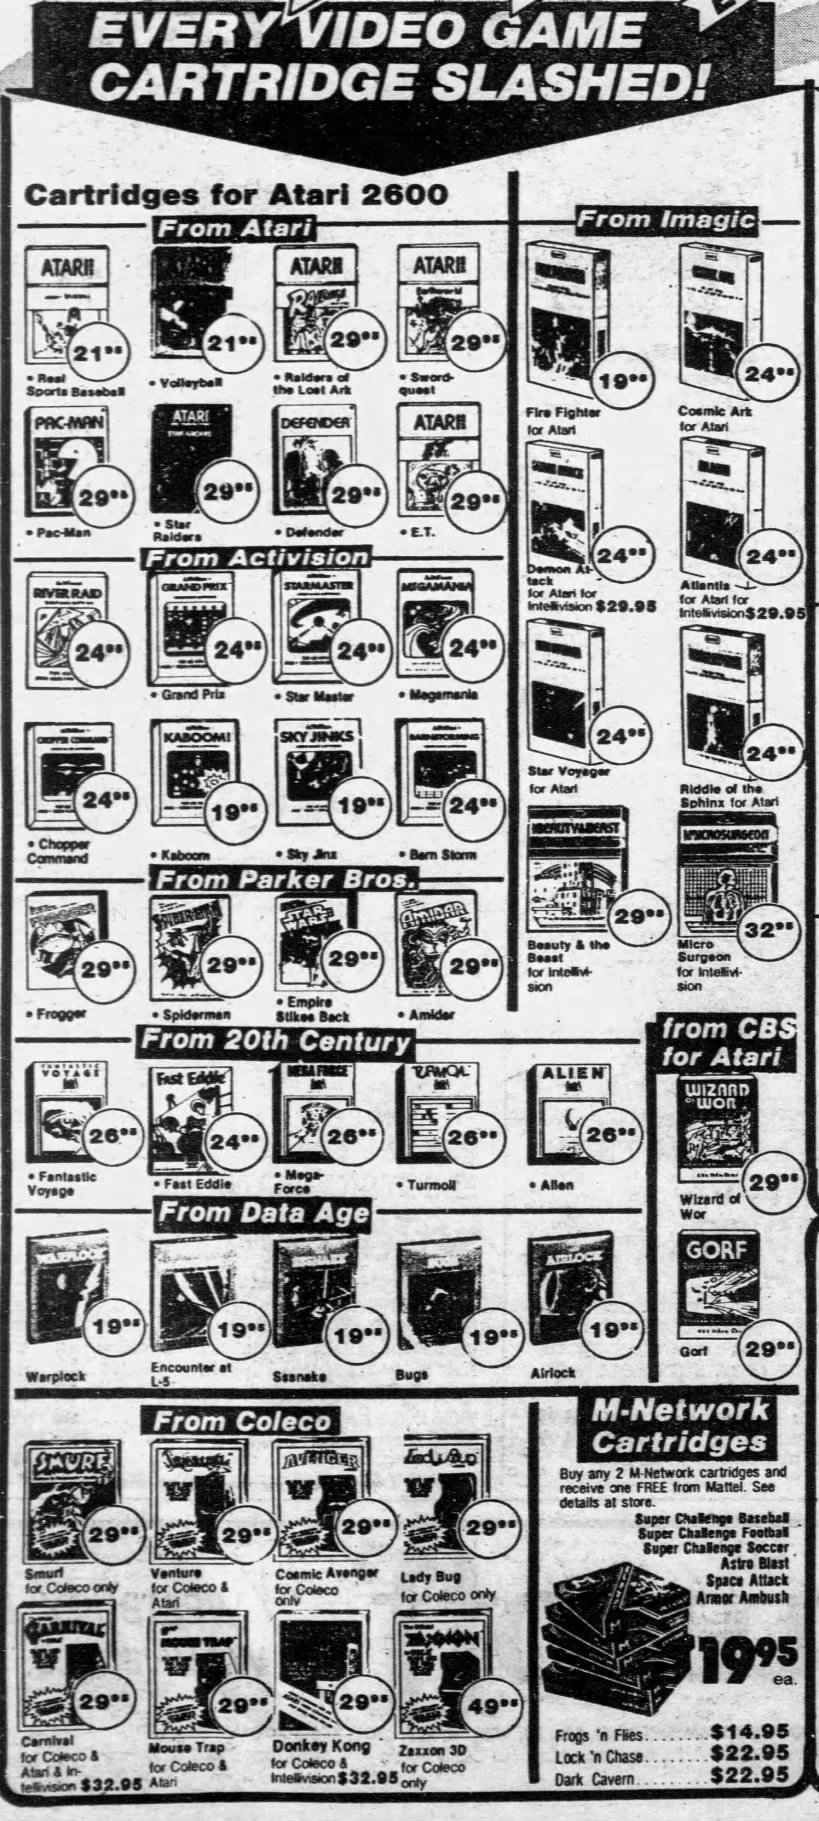 Atari 2600: The Wiz (Dec 26, 82)